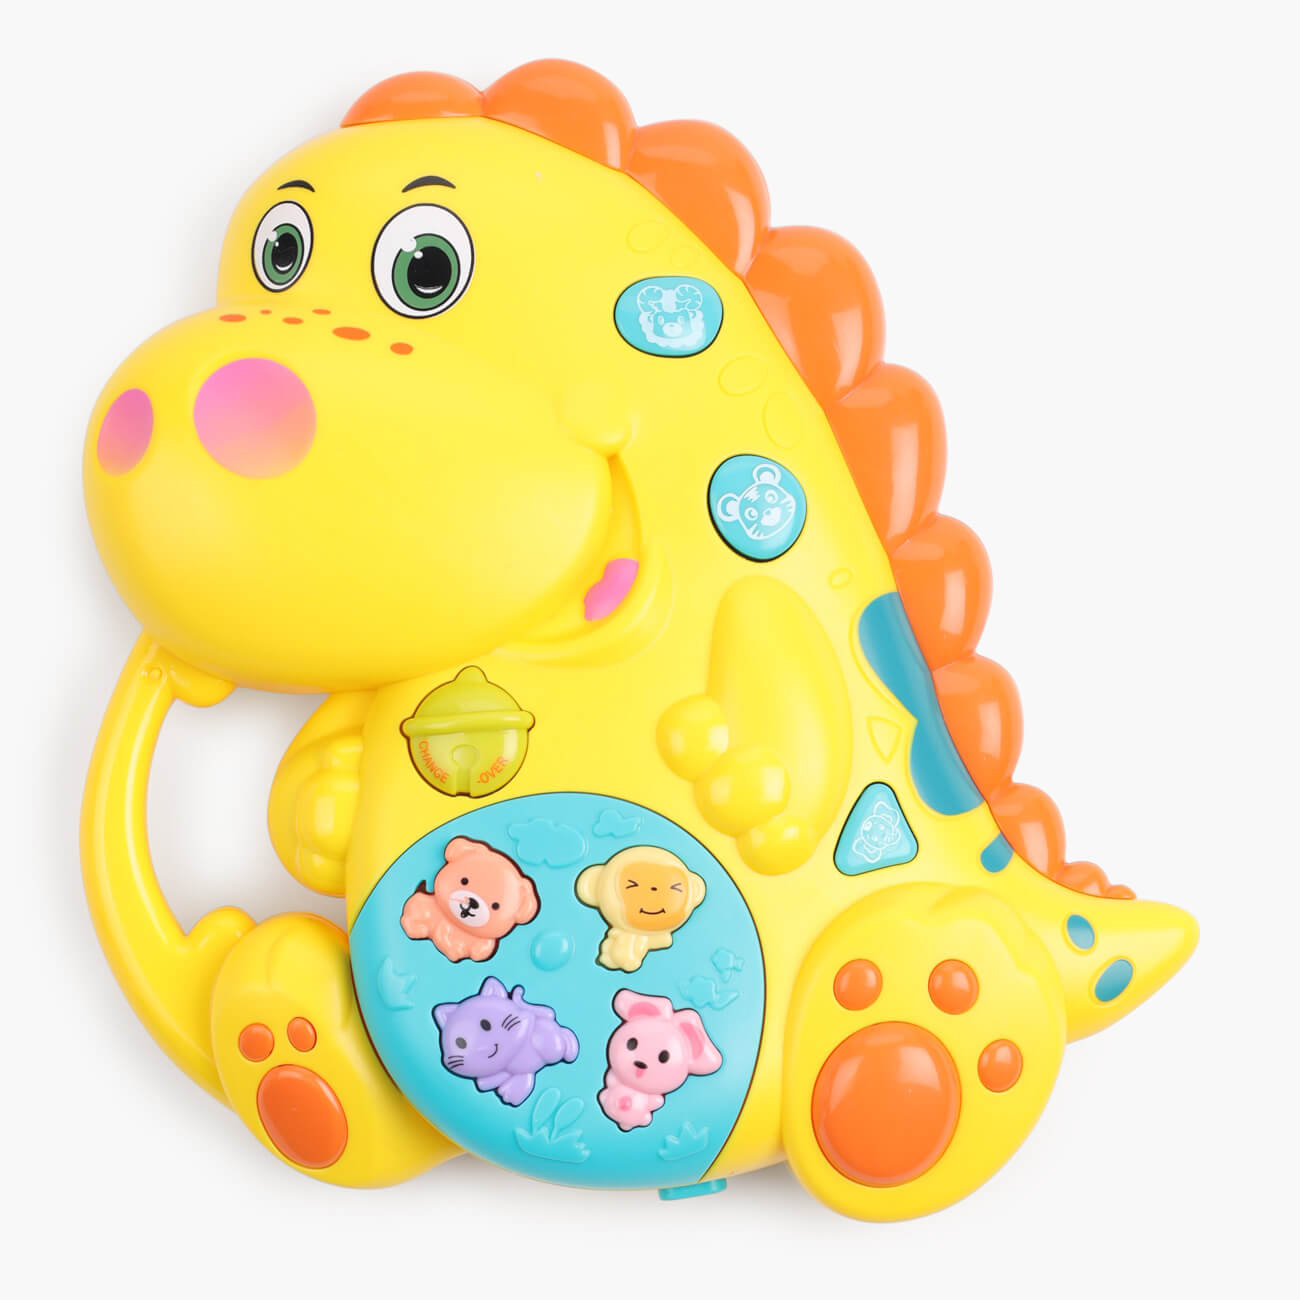 Игрушка развивающая, 15х16 см, музыкальная, пластик, зеленая, Динозавр, Dino развивающая игрушка грелка мишка крошка с вишнёвыми косточками